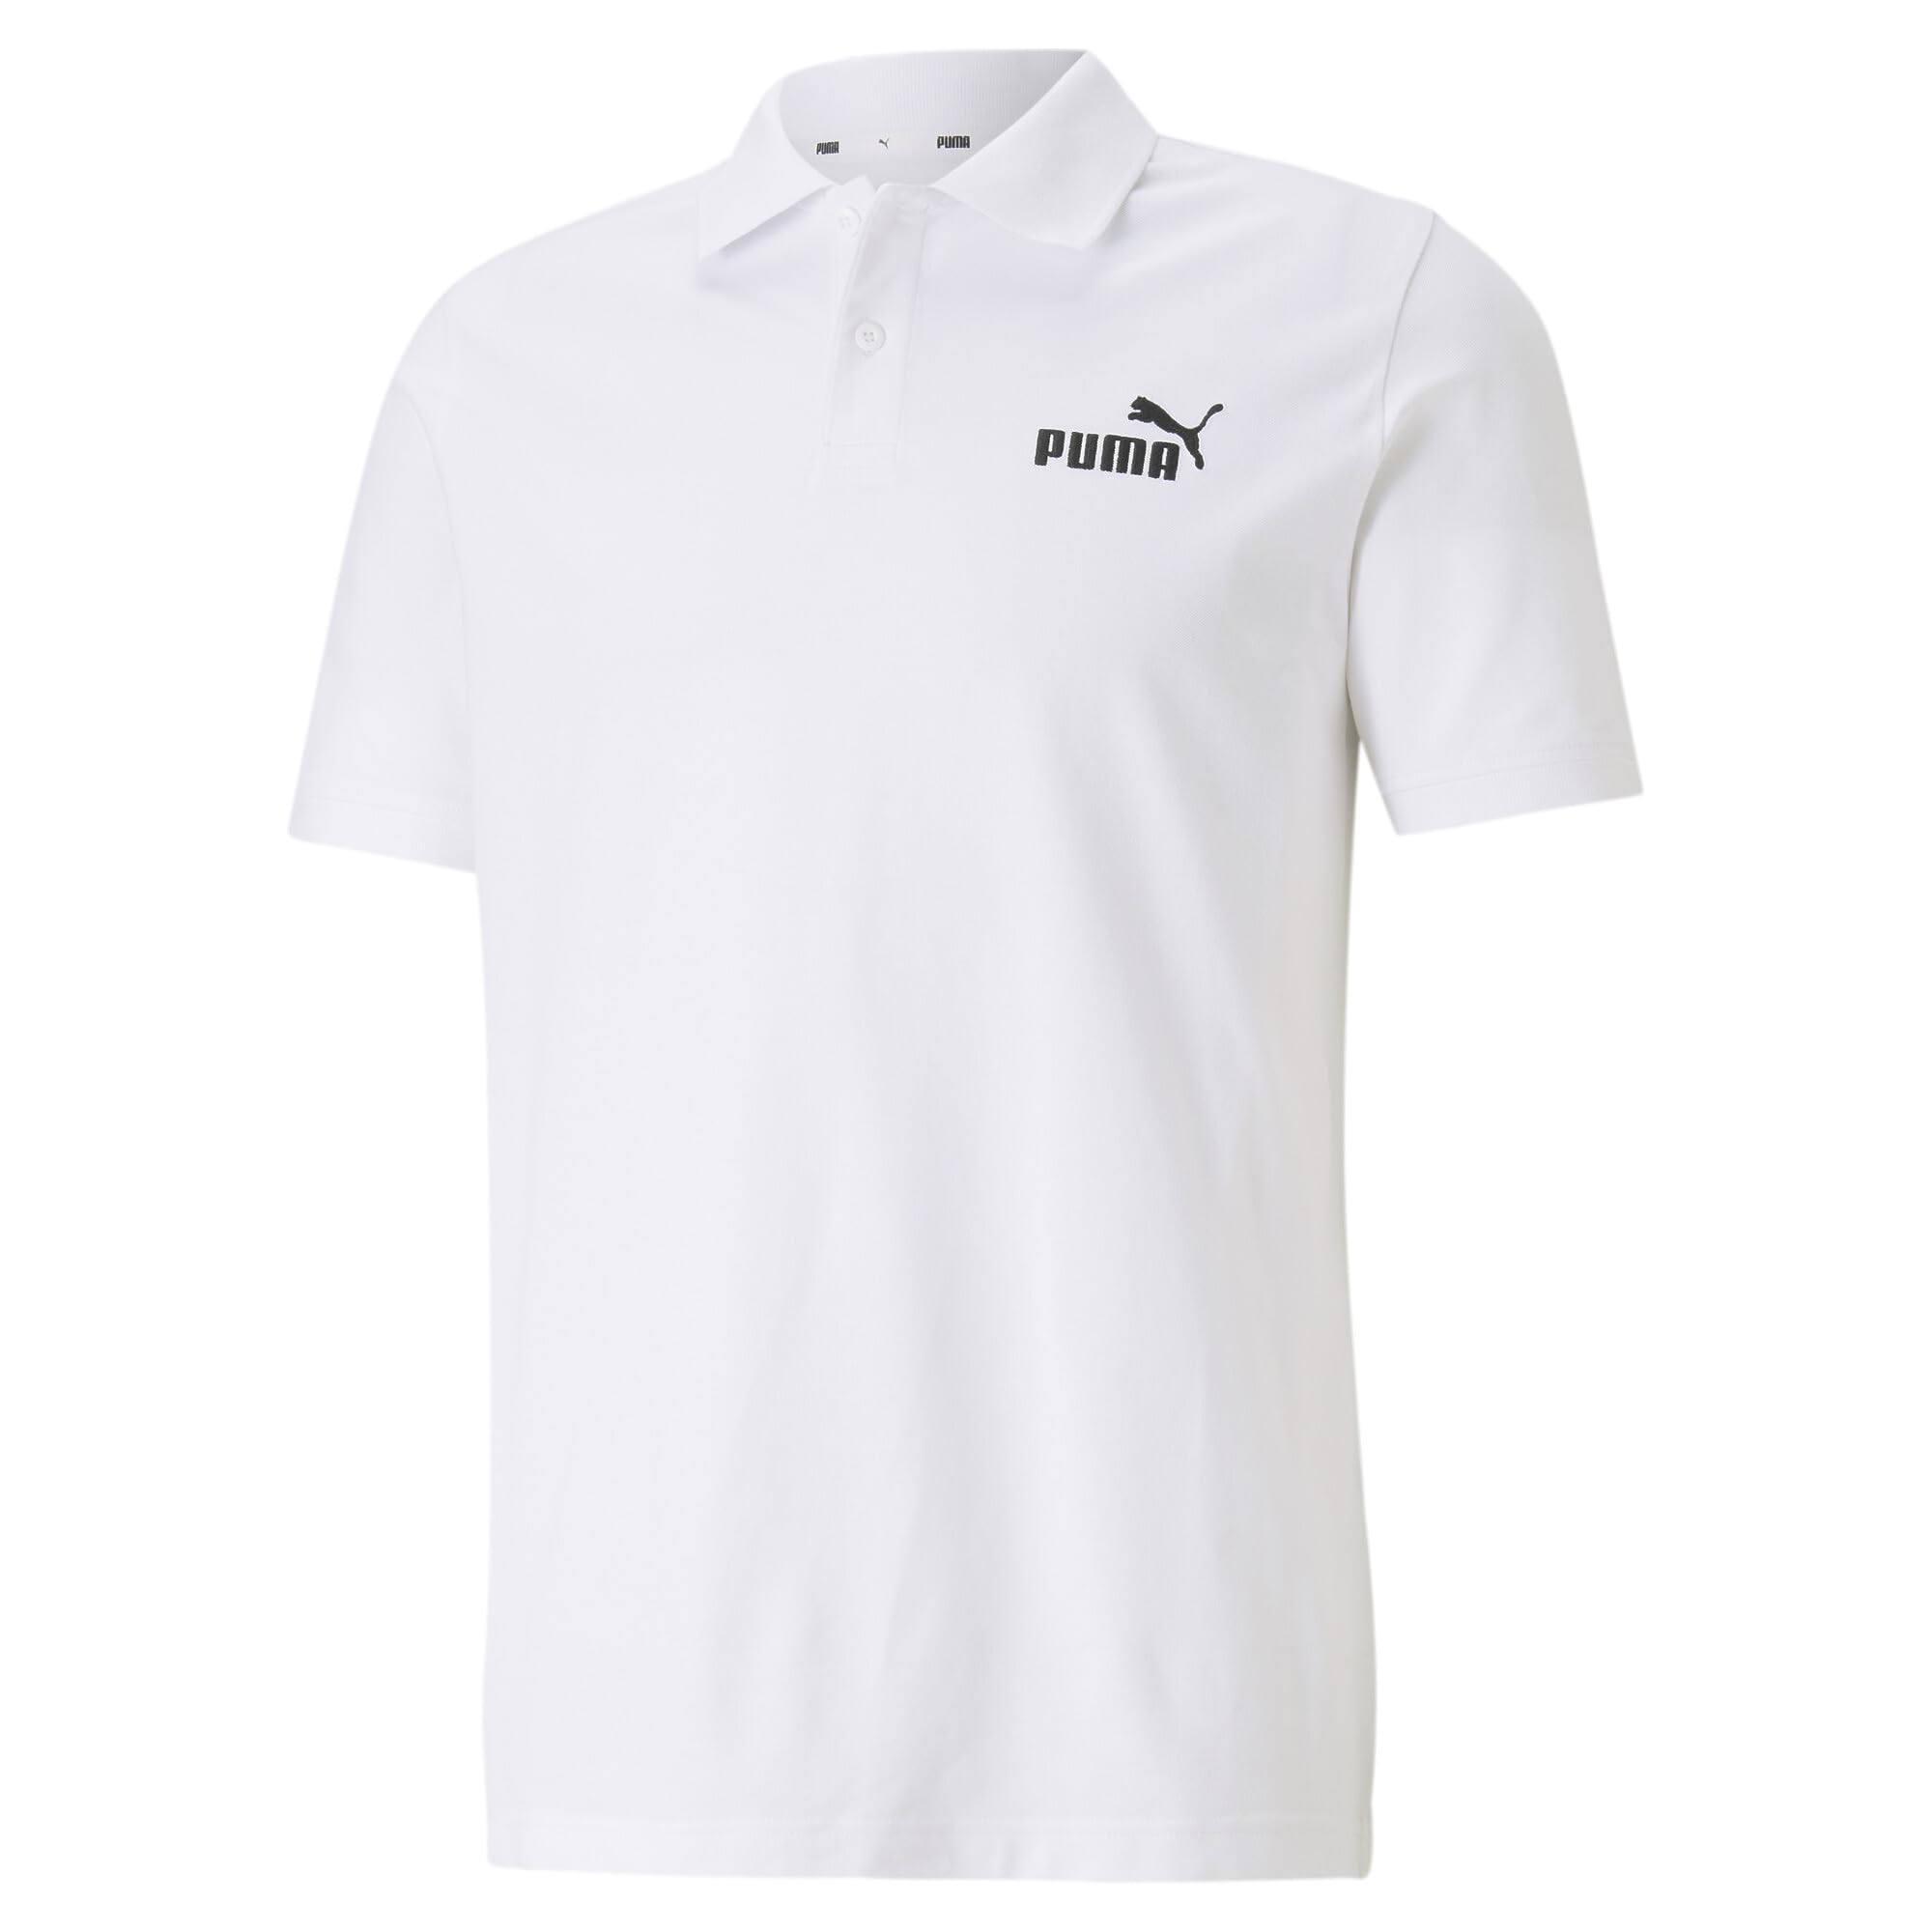 PUMA Herren Essentials Pique Poloshirt, weiß - White (White), L